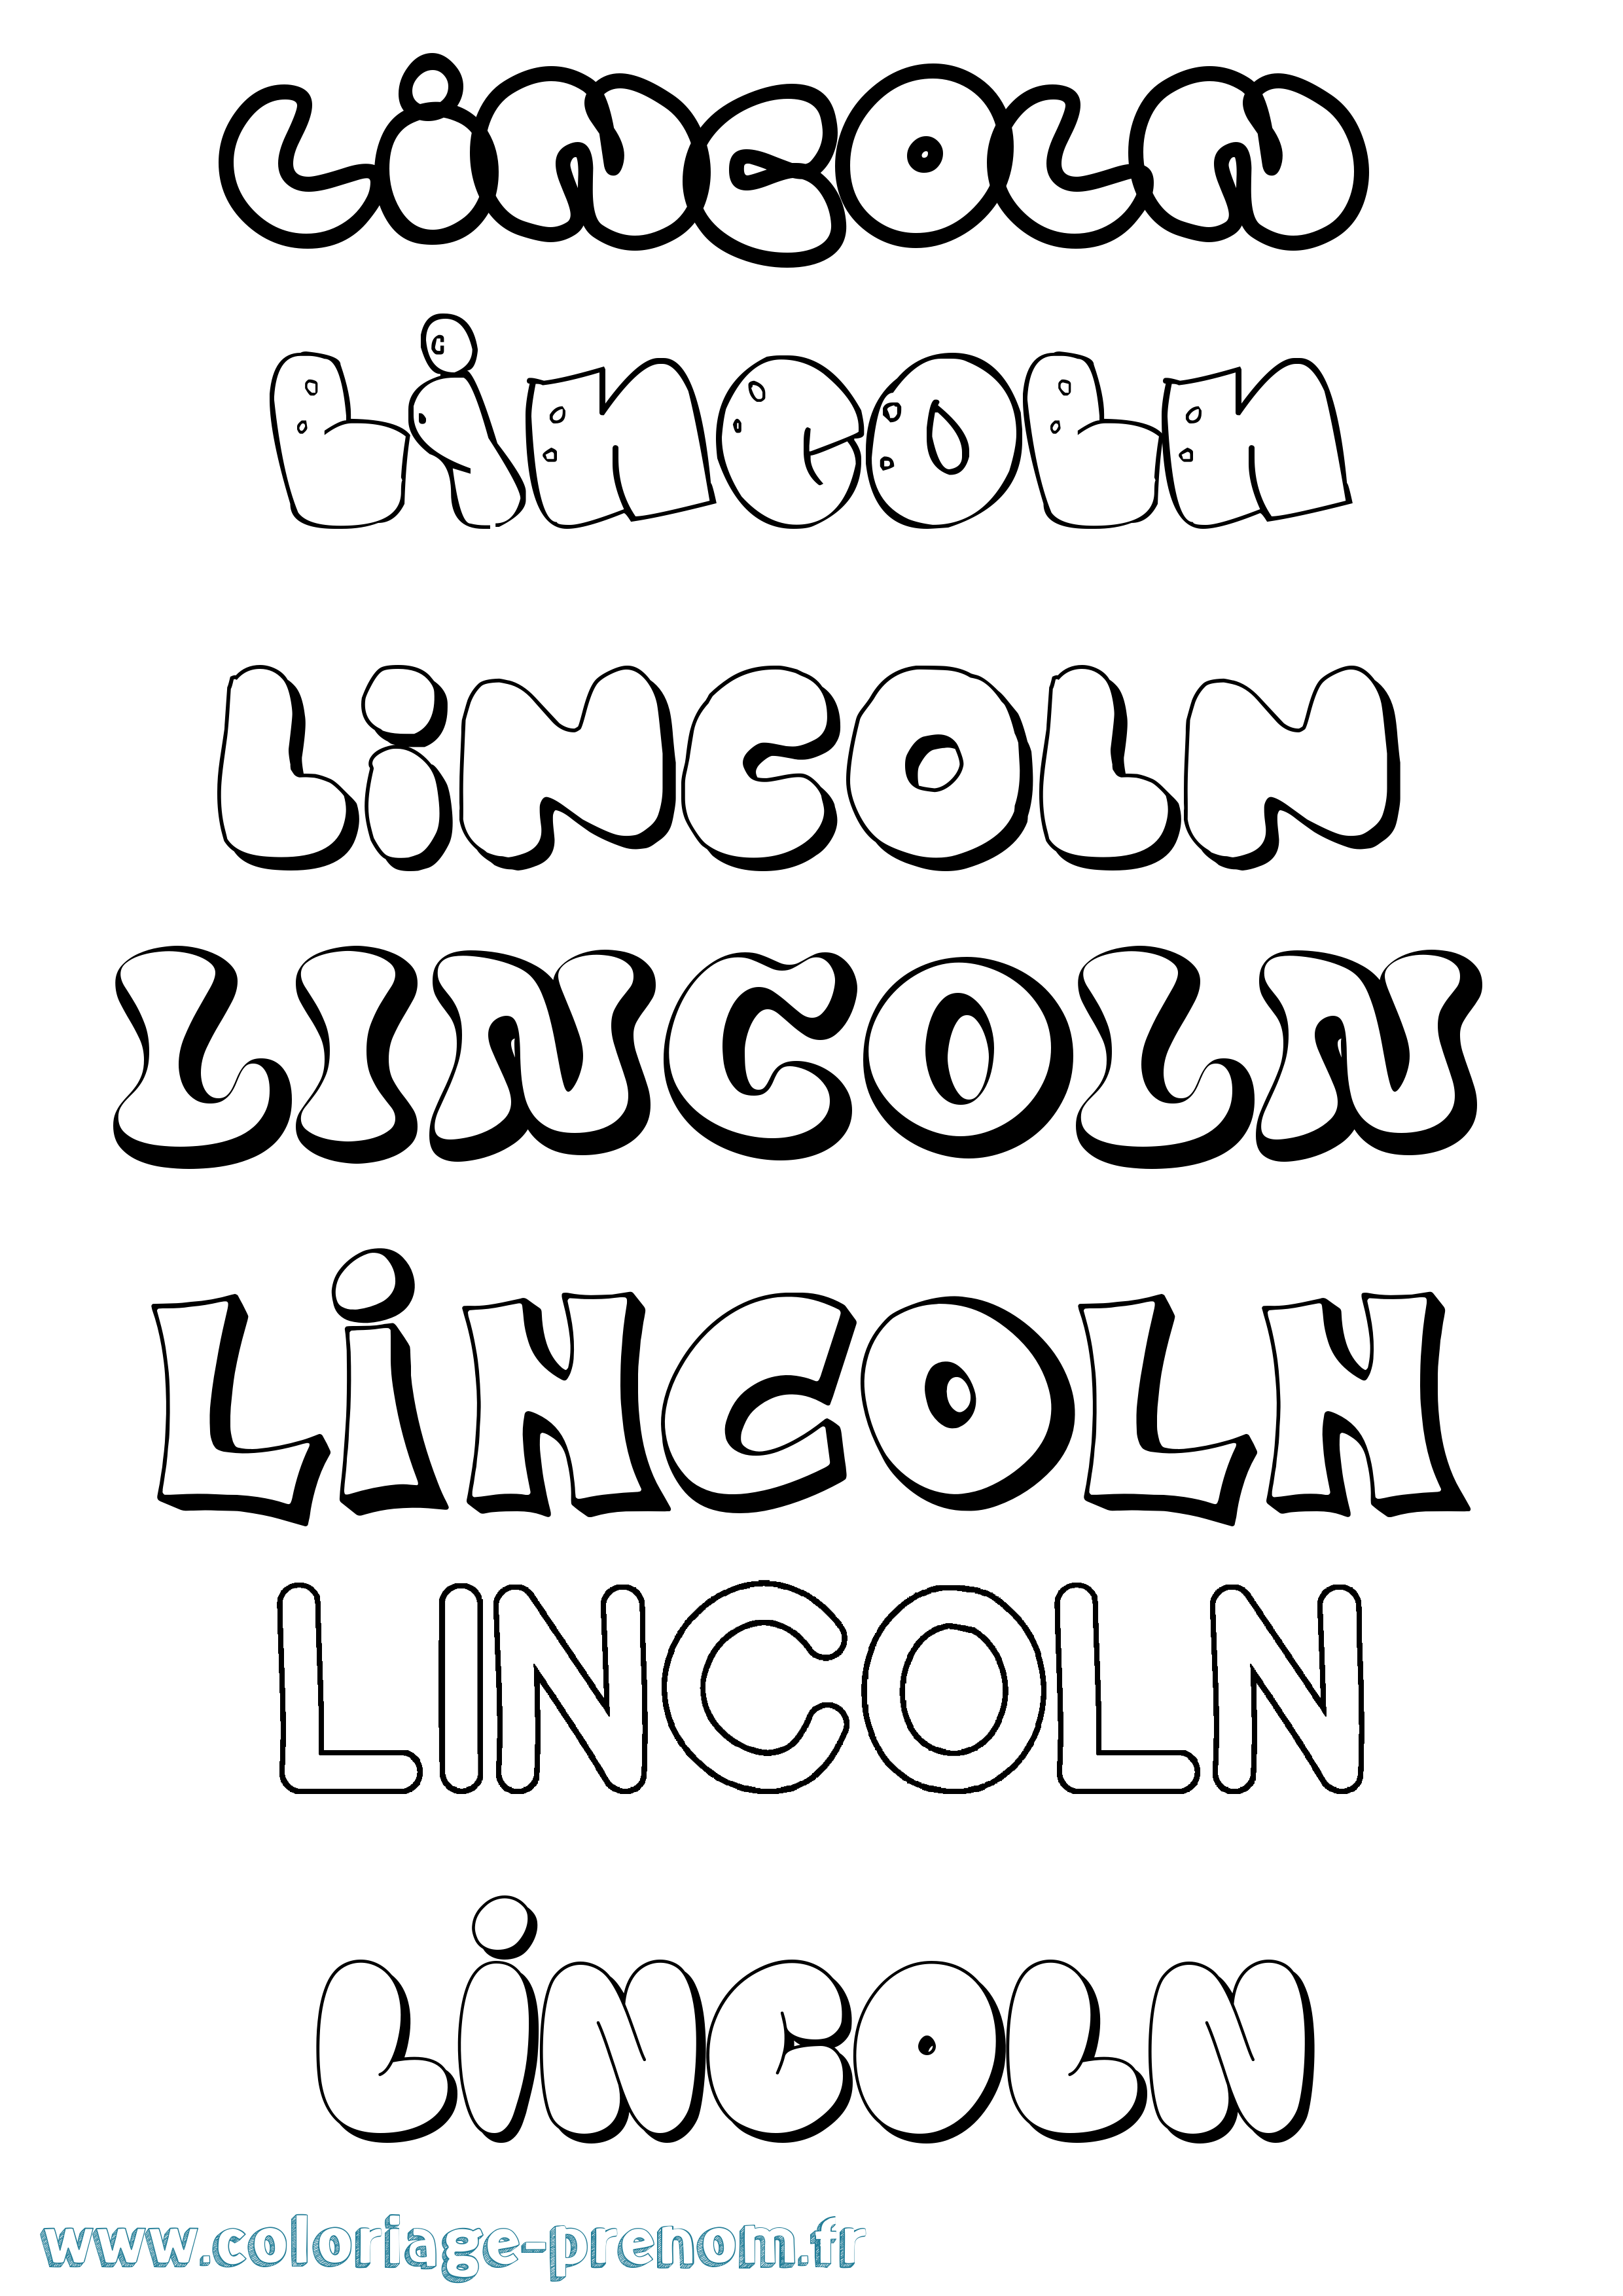 Coloriage prénom Lincoln Bubble